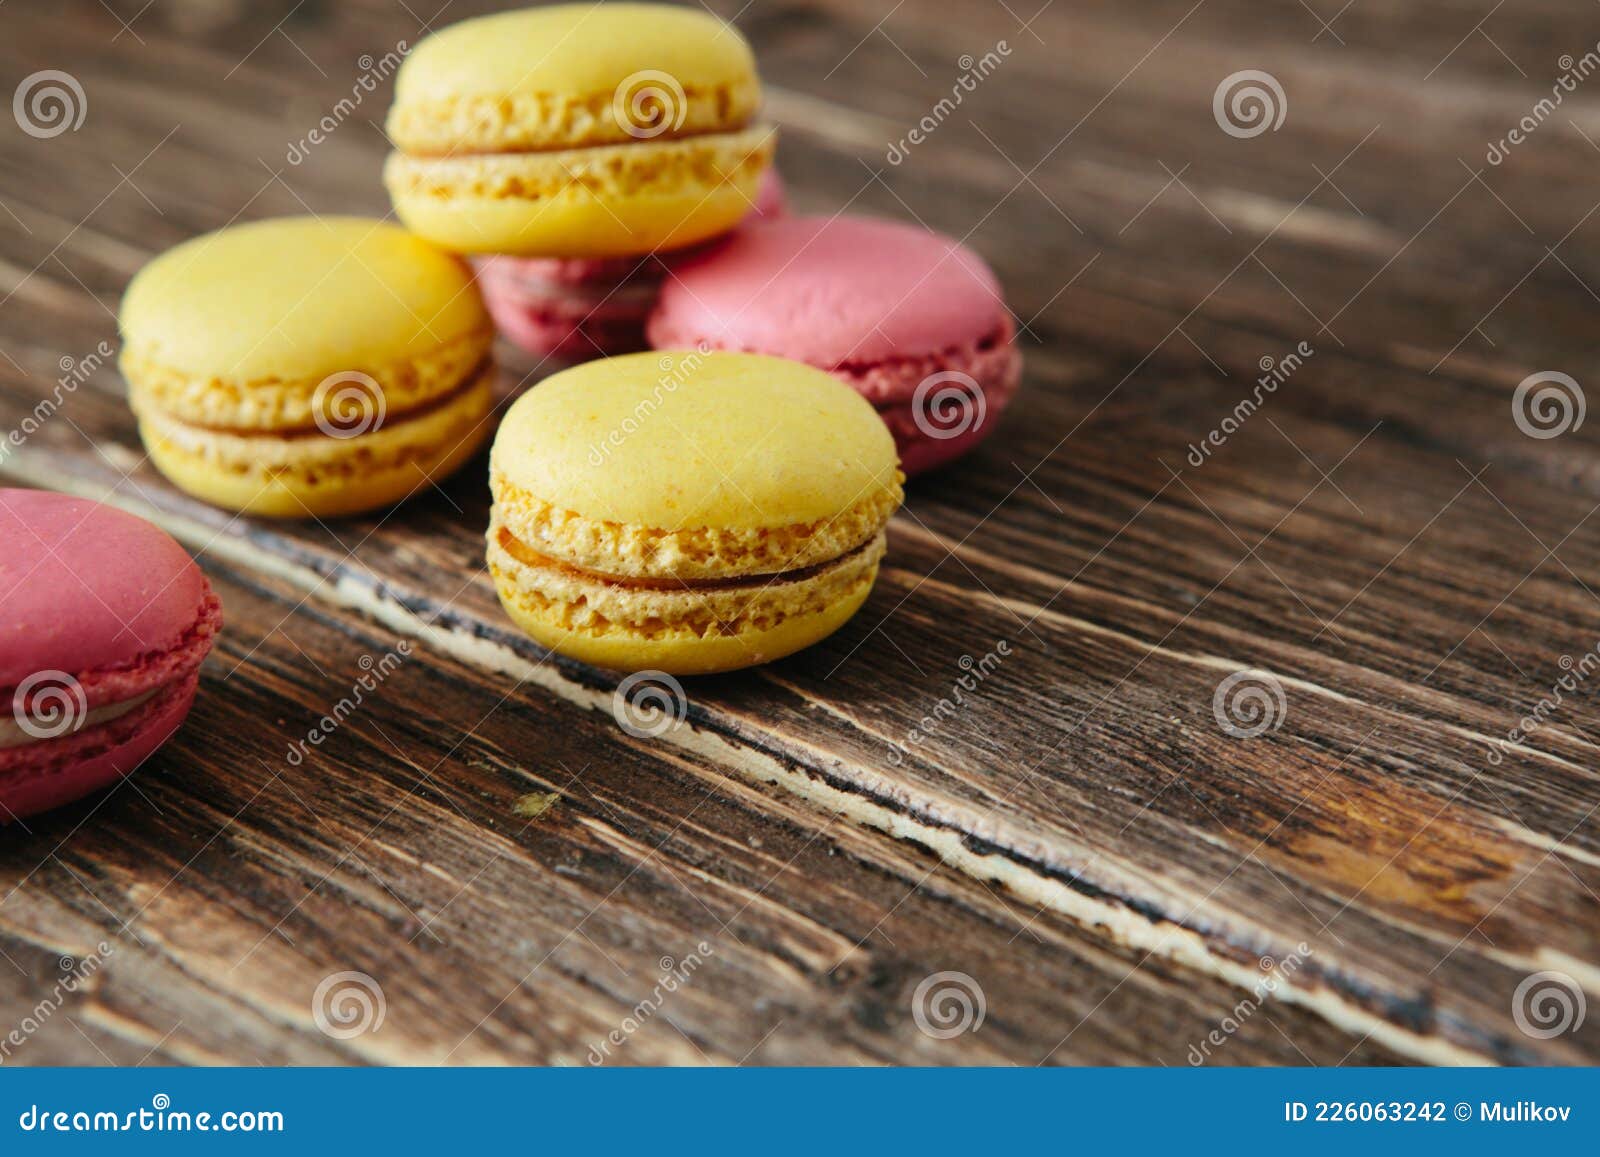 сладкий разноцветный французский десерт с печеньем макарон на коричневом  деревянном столе Стоковое Фото - изображение насчитывающей предметы,  шоколад: 226063242